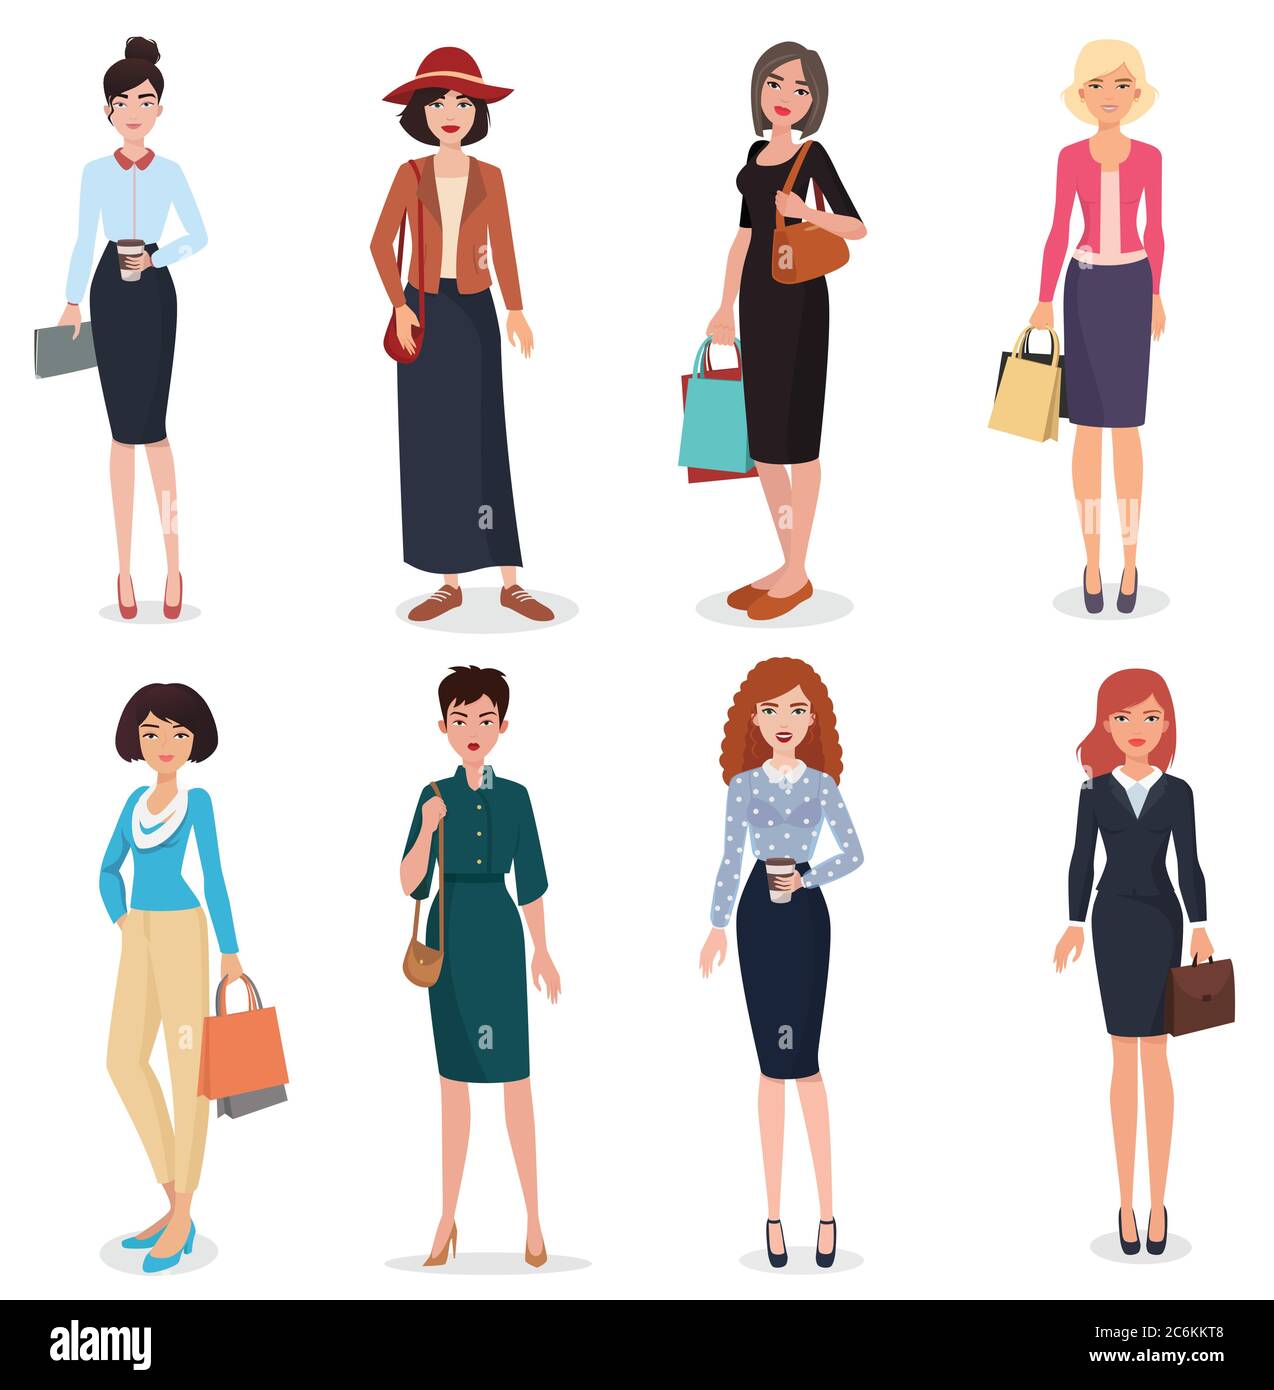 Frauen Erwachsene in Business-Büro und Mode Kleidung. Schöne Cartoon  Erwachsene Frau Sammlung Stock-Vektorgrafik - Alamy